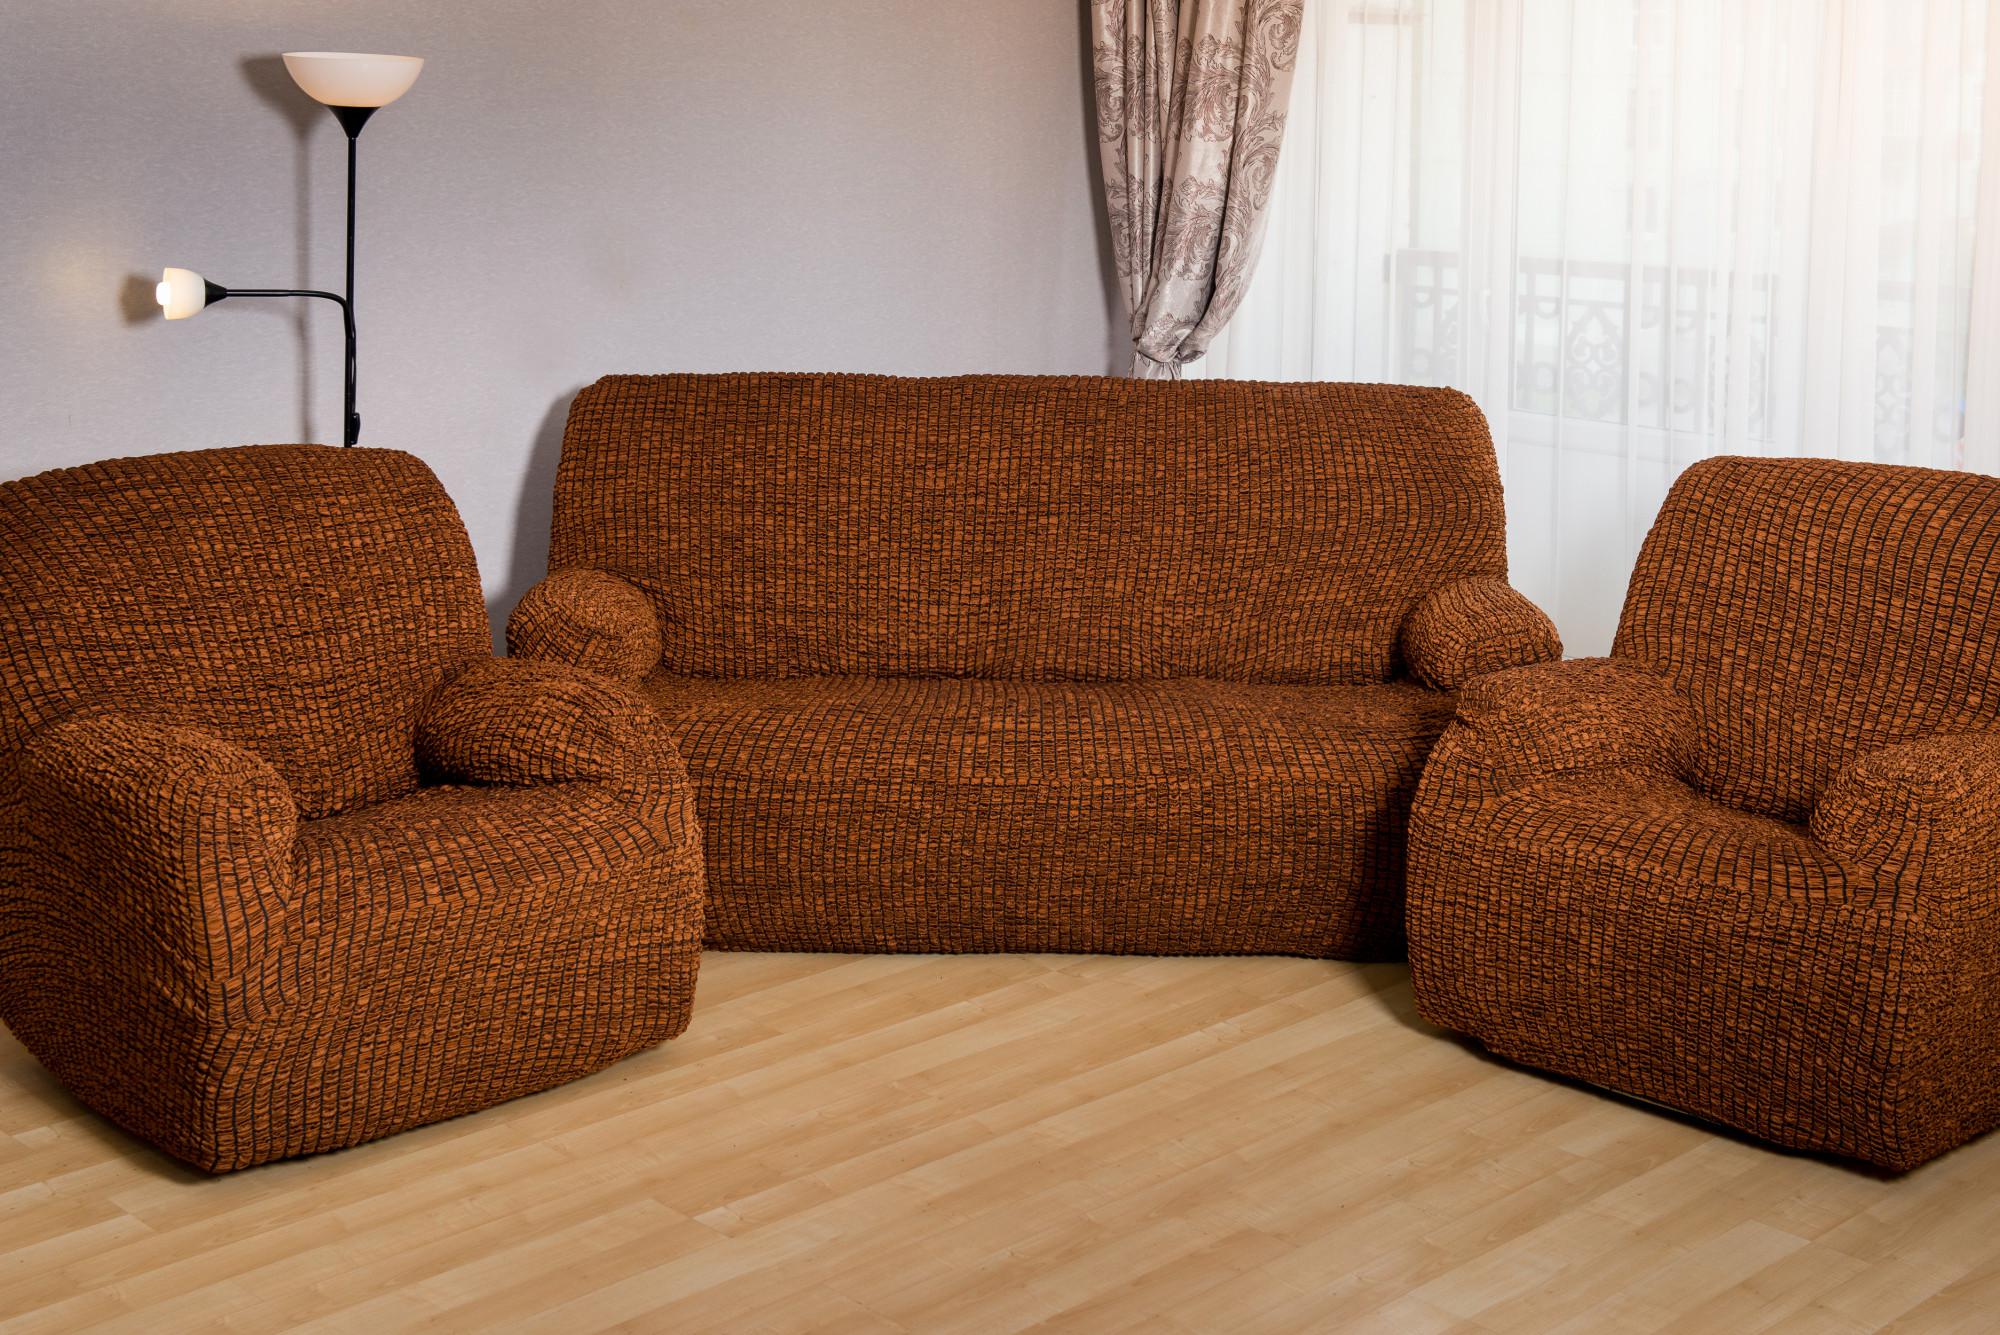 мягкая мебель диван и 2 кресла фото